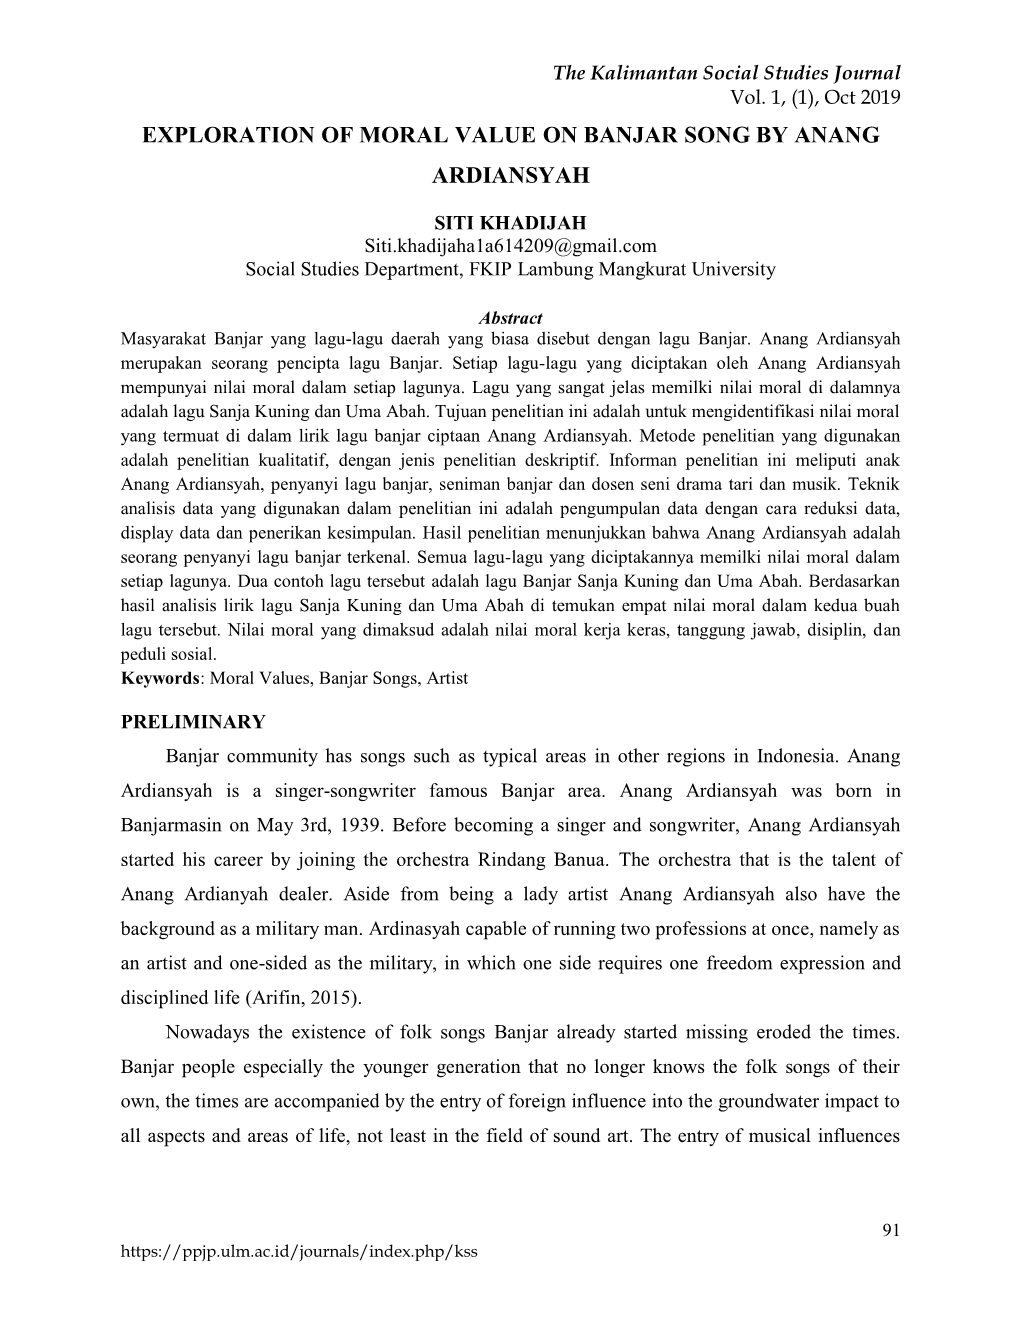 Exploration of Moral Value on Banjar Song by Anang Ardiansyah